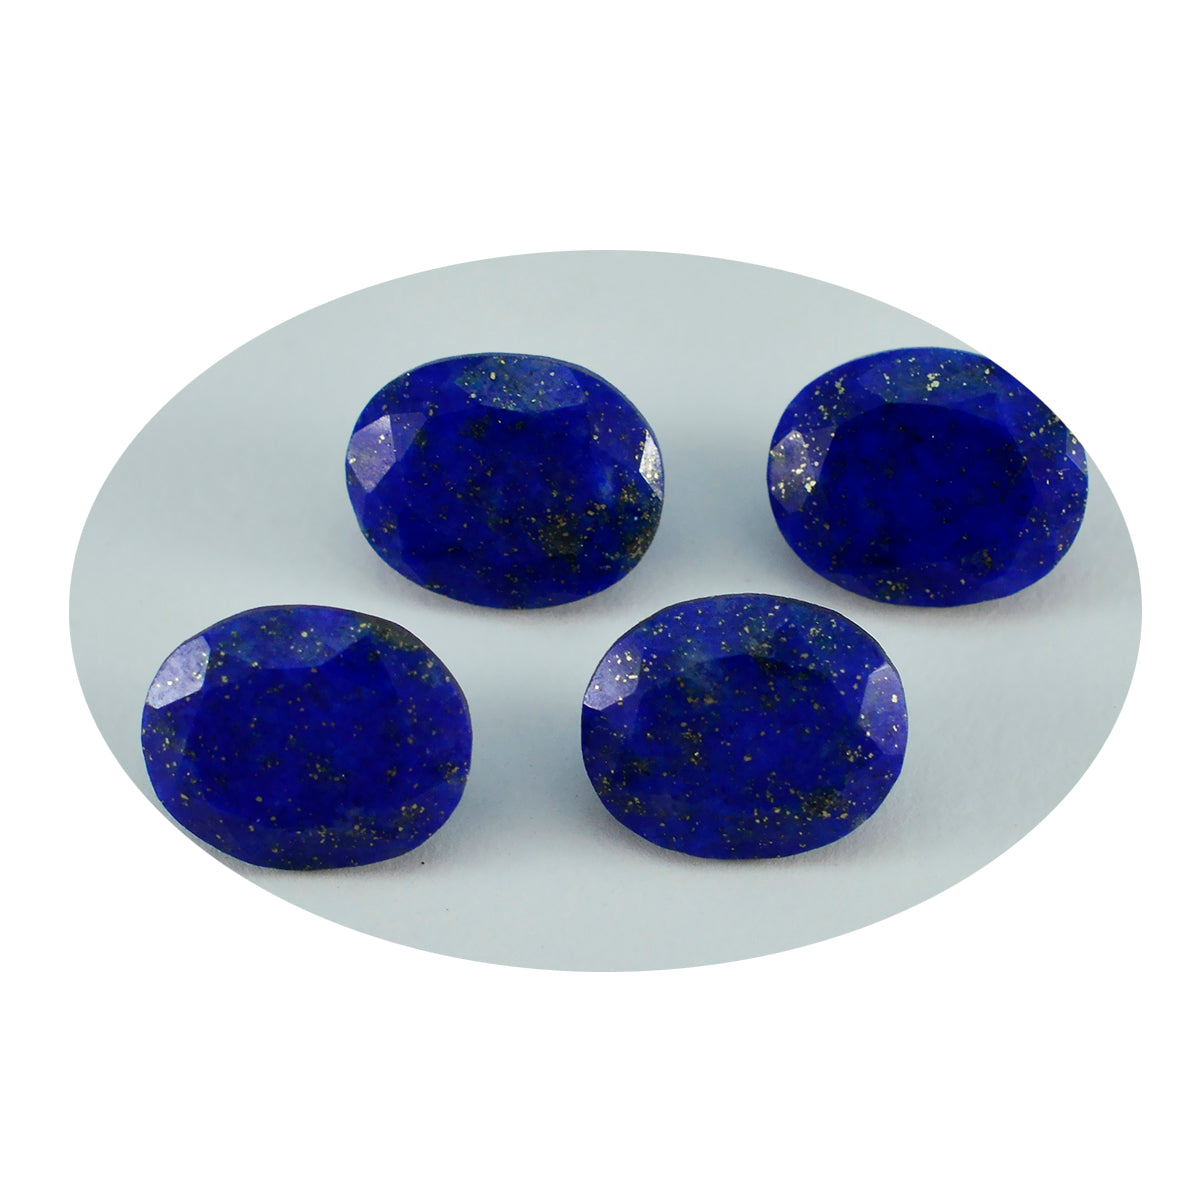 riyogems 1 шт. натуральный синий лазурит граненый 10x12 мм овальная форма удивительного качества свободный камень